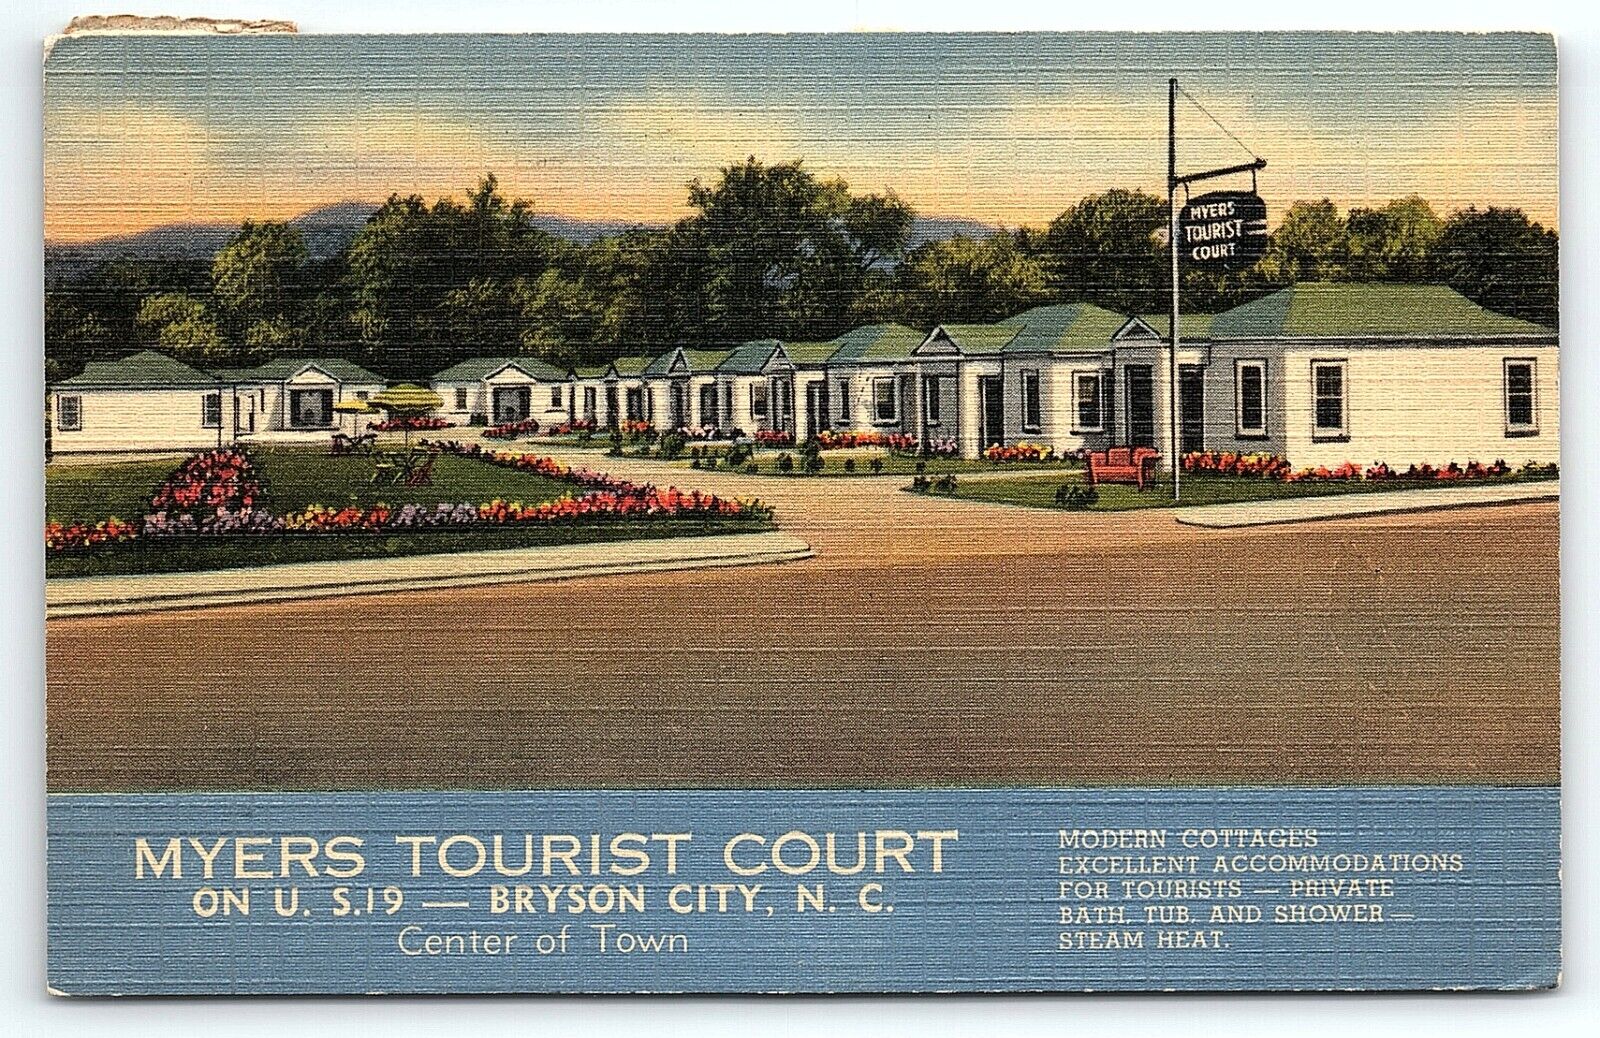 1946 BRYSON CITY NC MYERS TOURIST COURT US-19 MODERN COTTAGES POSTCARD P3408